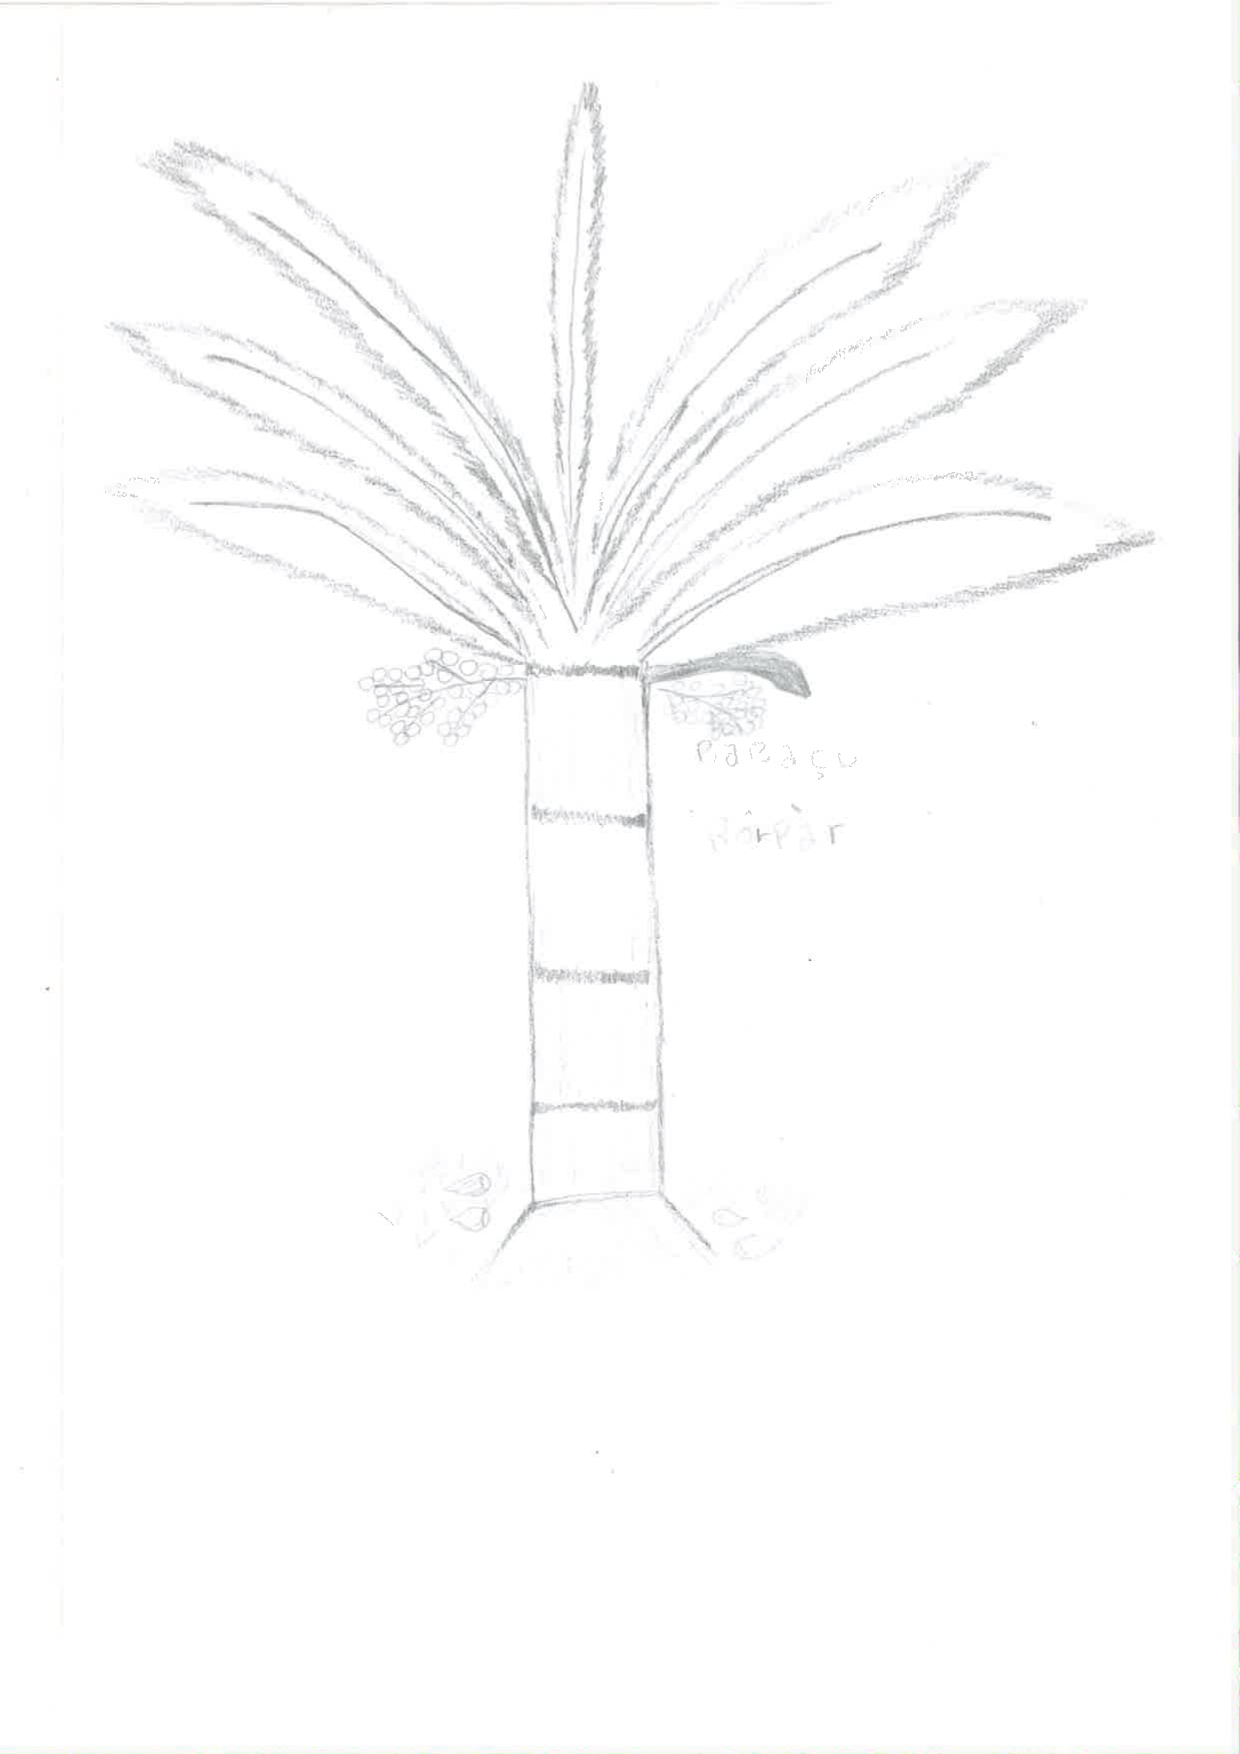 A imagem mostra uma árvore desenhada